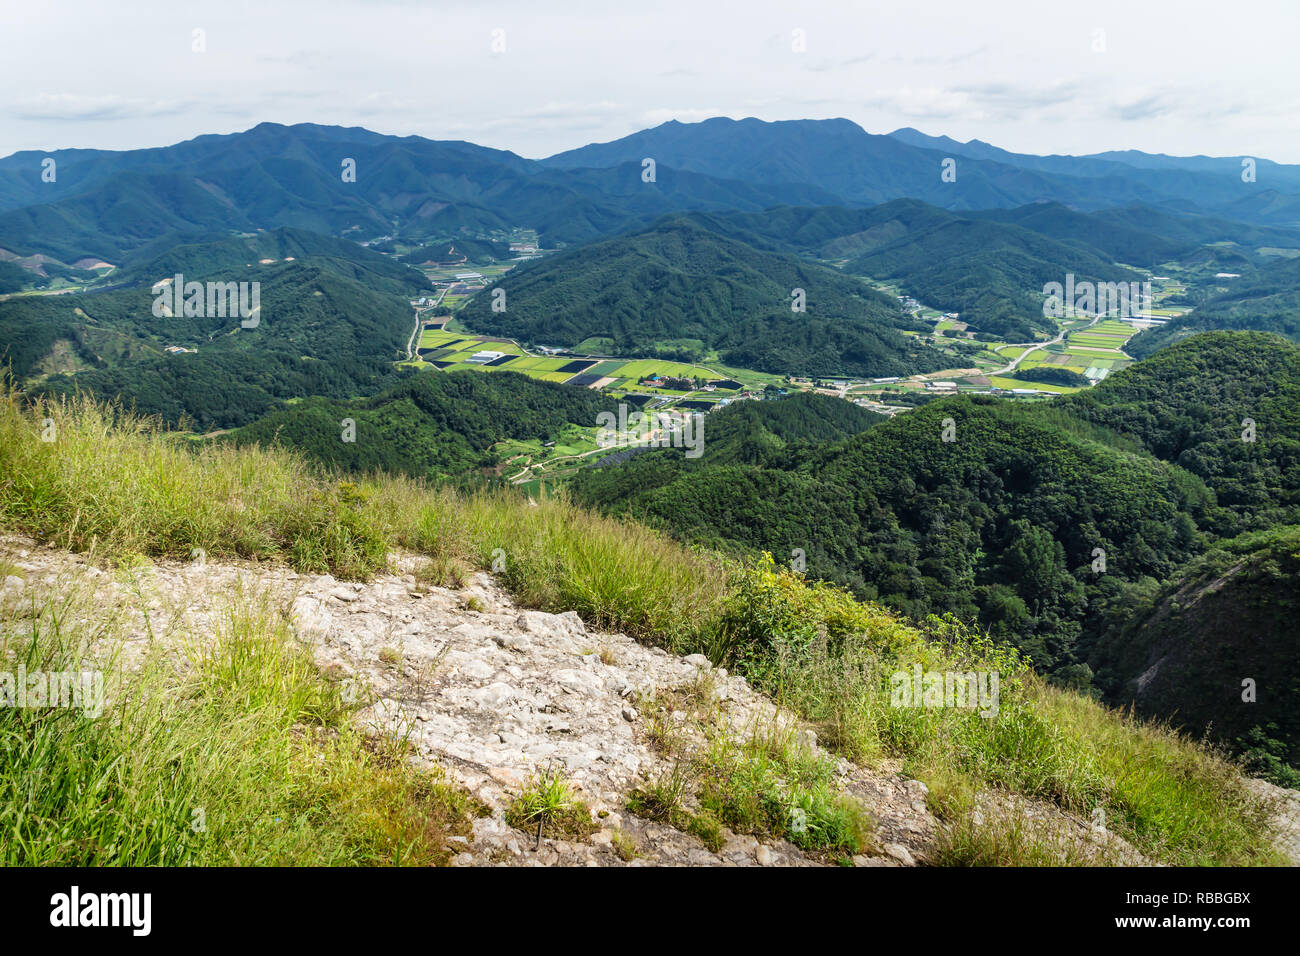 Vista nella valle con i campi e colline dalla sommità del monte Maisan, cavallo orecchio montagna, Maryeong-myeon, Corea del Sud Foto Stock